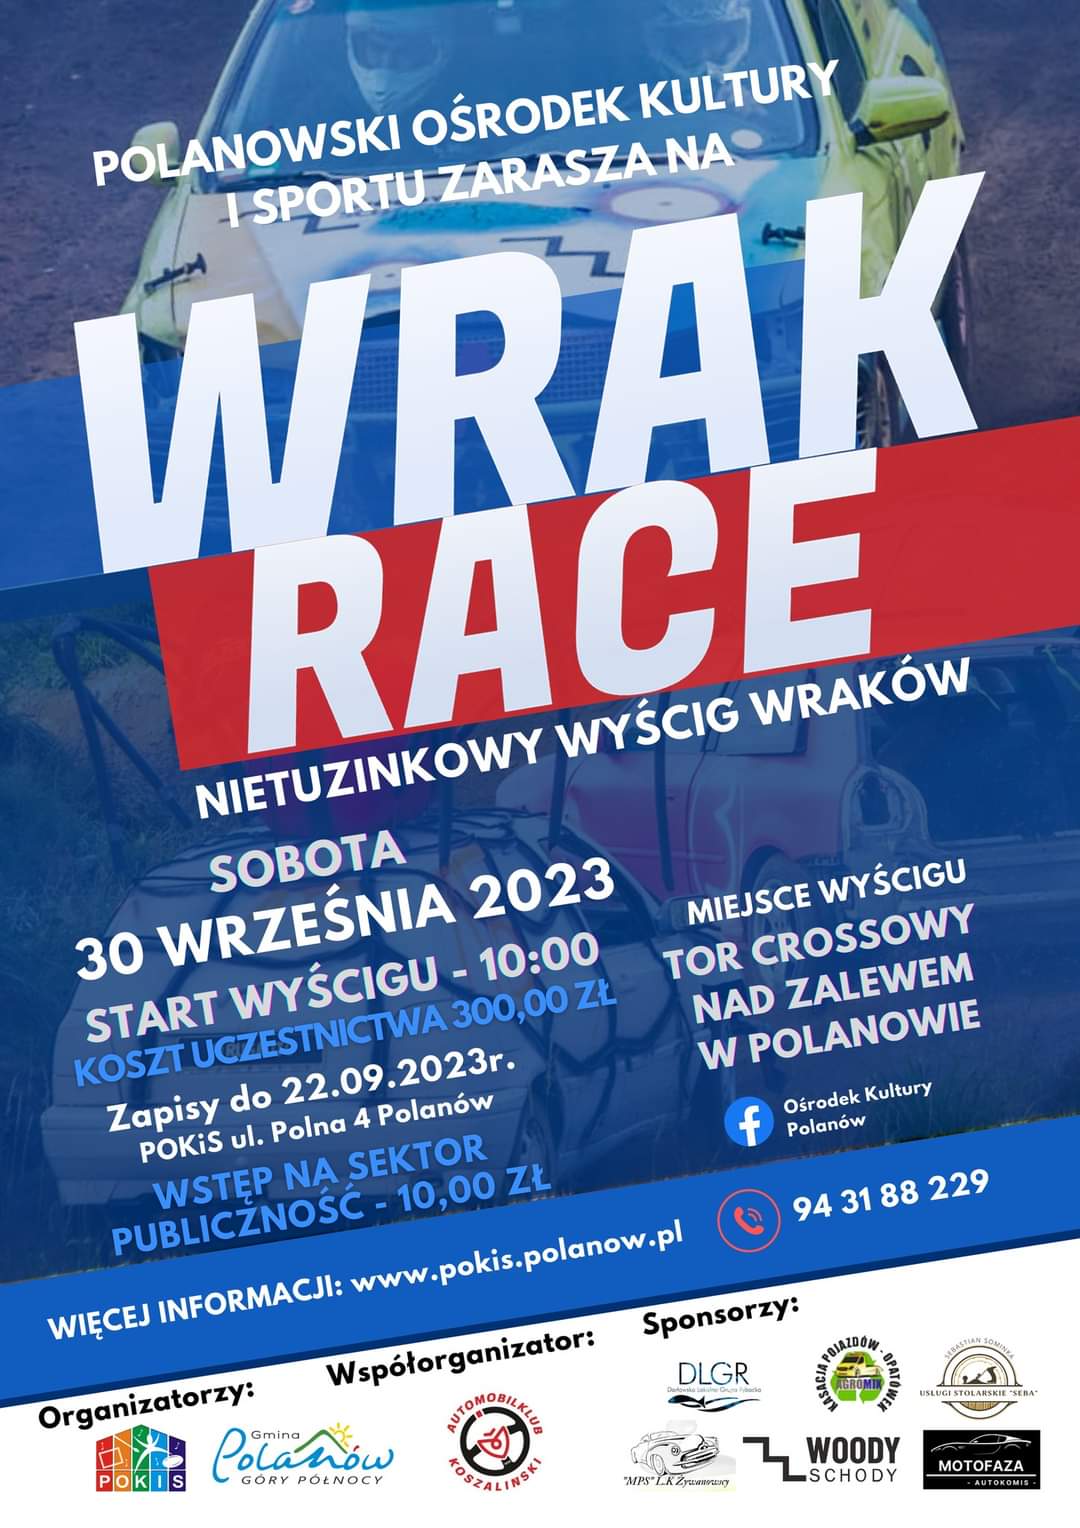 Plakat z zaproszeniem na wyścig wraków w Polanowie 30 września 2023